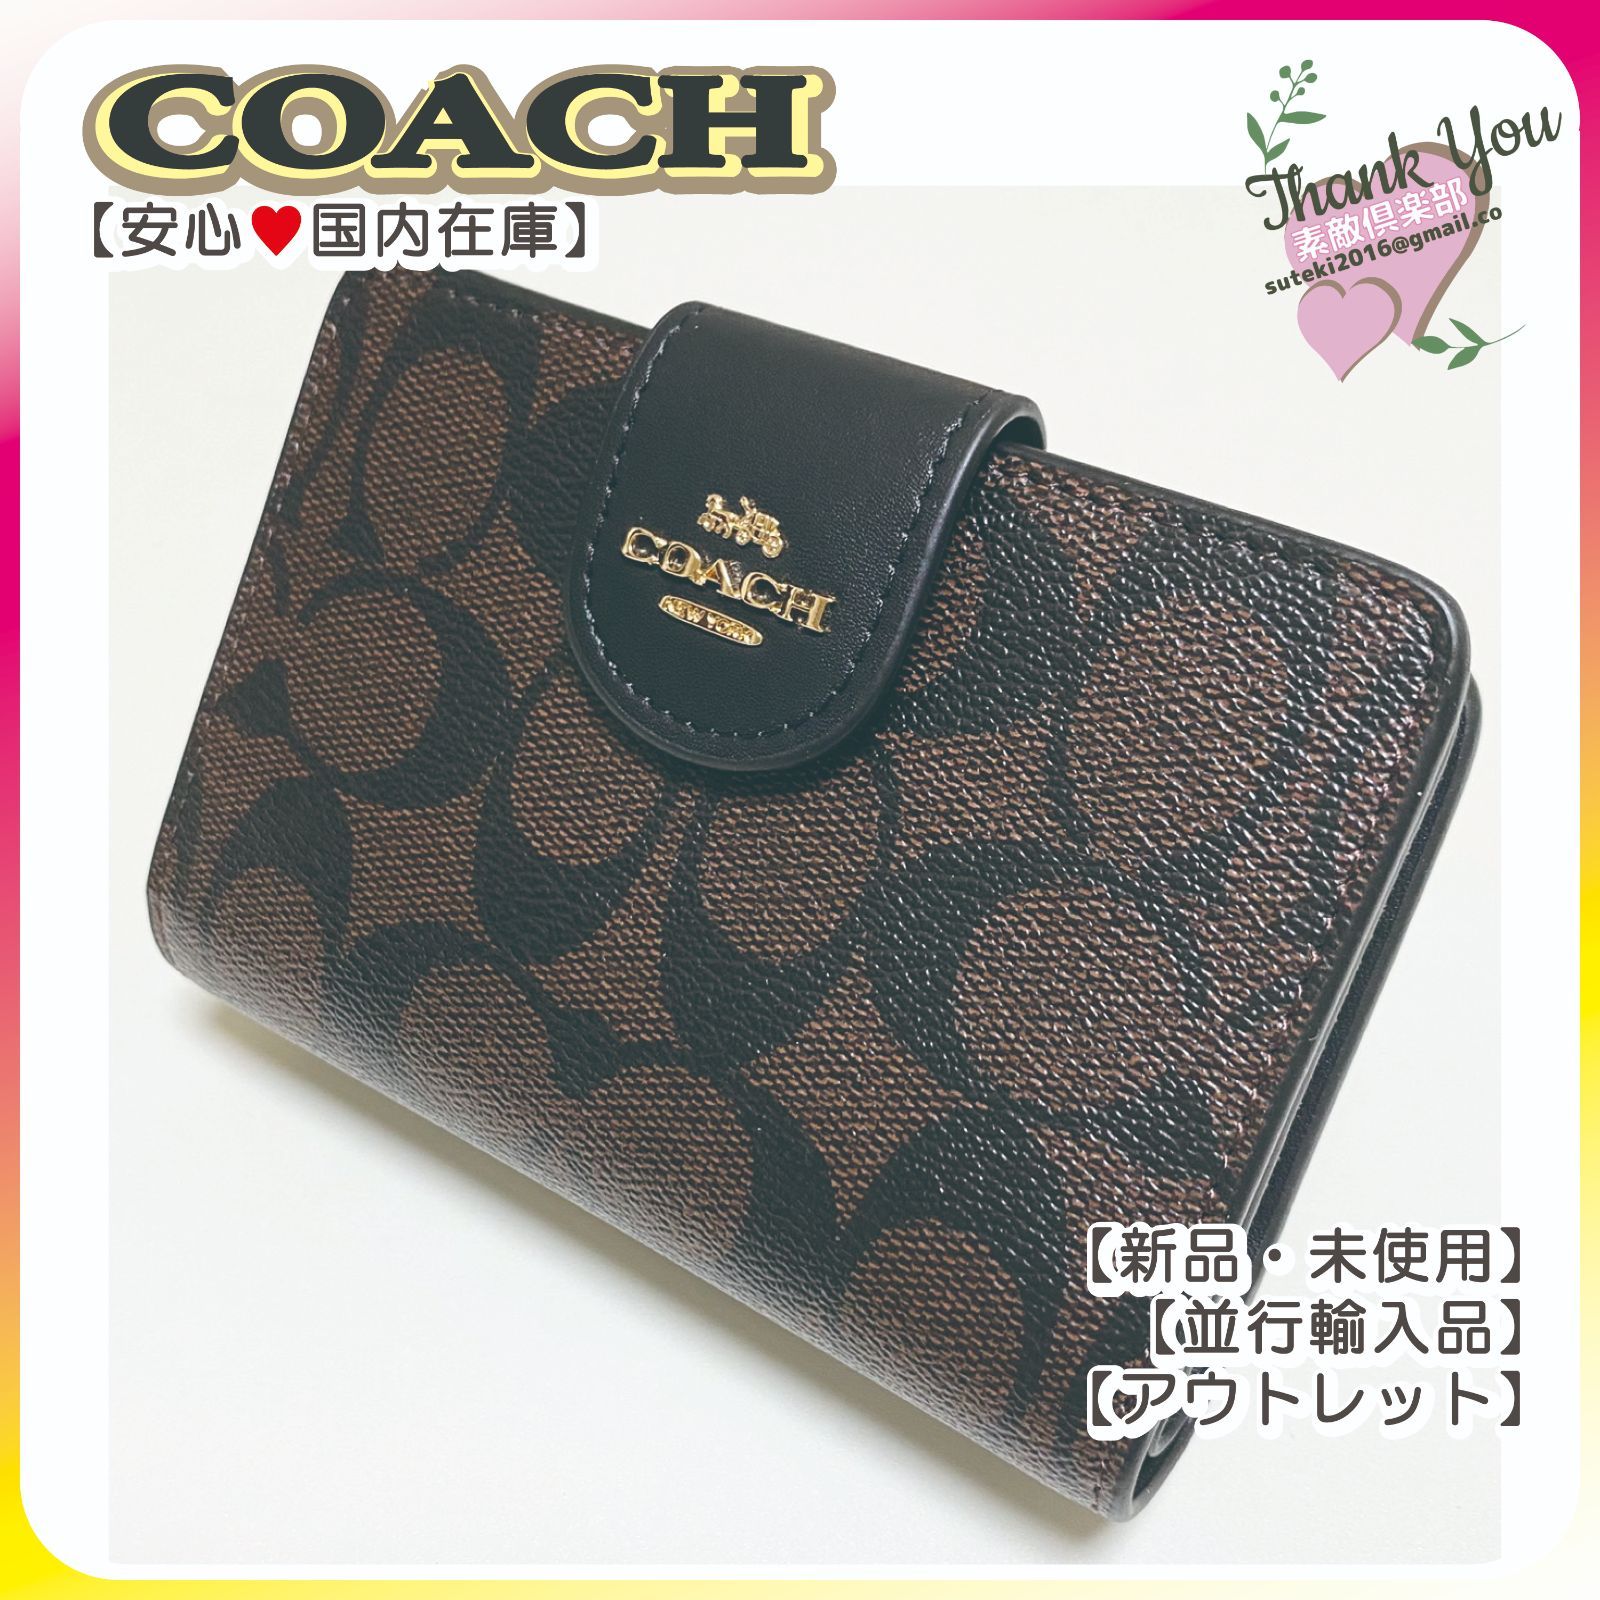 【新入荷】COACH 二つ折り財布 ミディアム コーナー ジップ C0082 ブラウン×ブラック